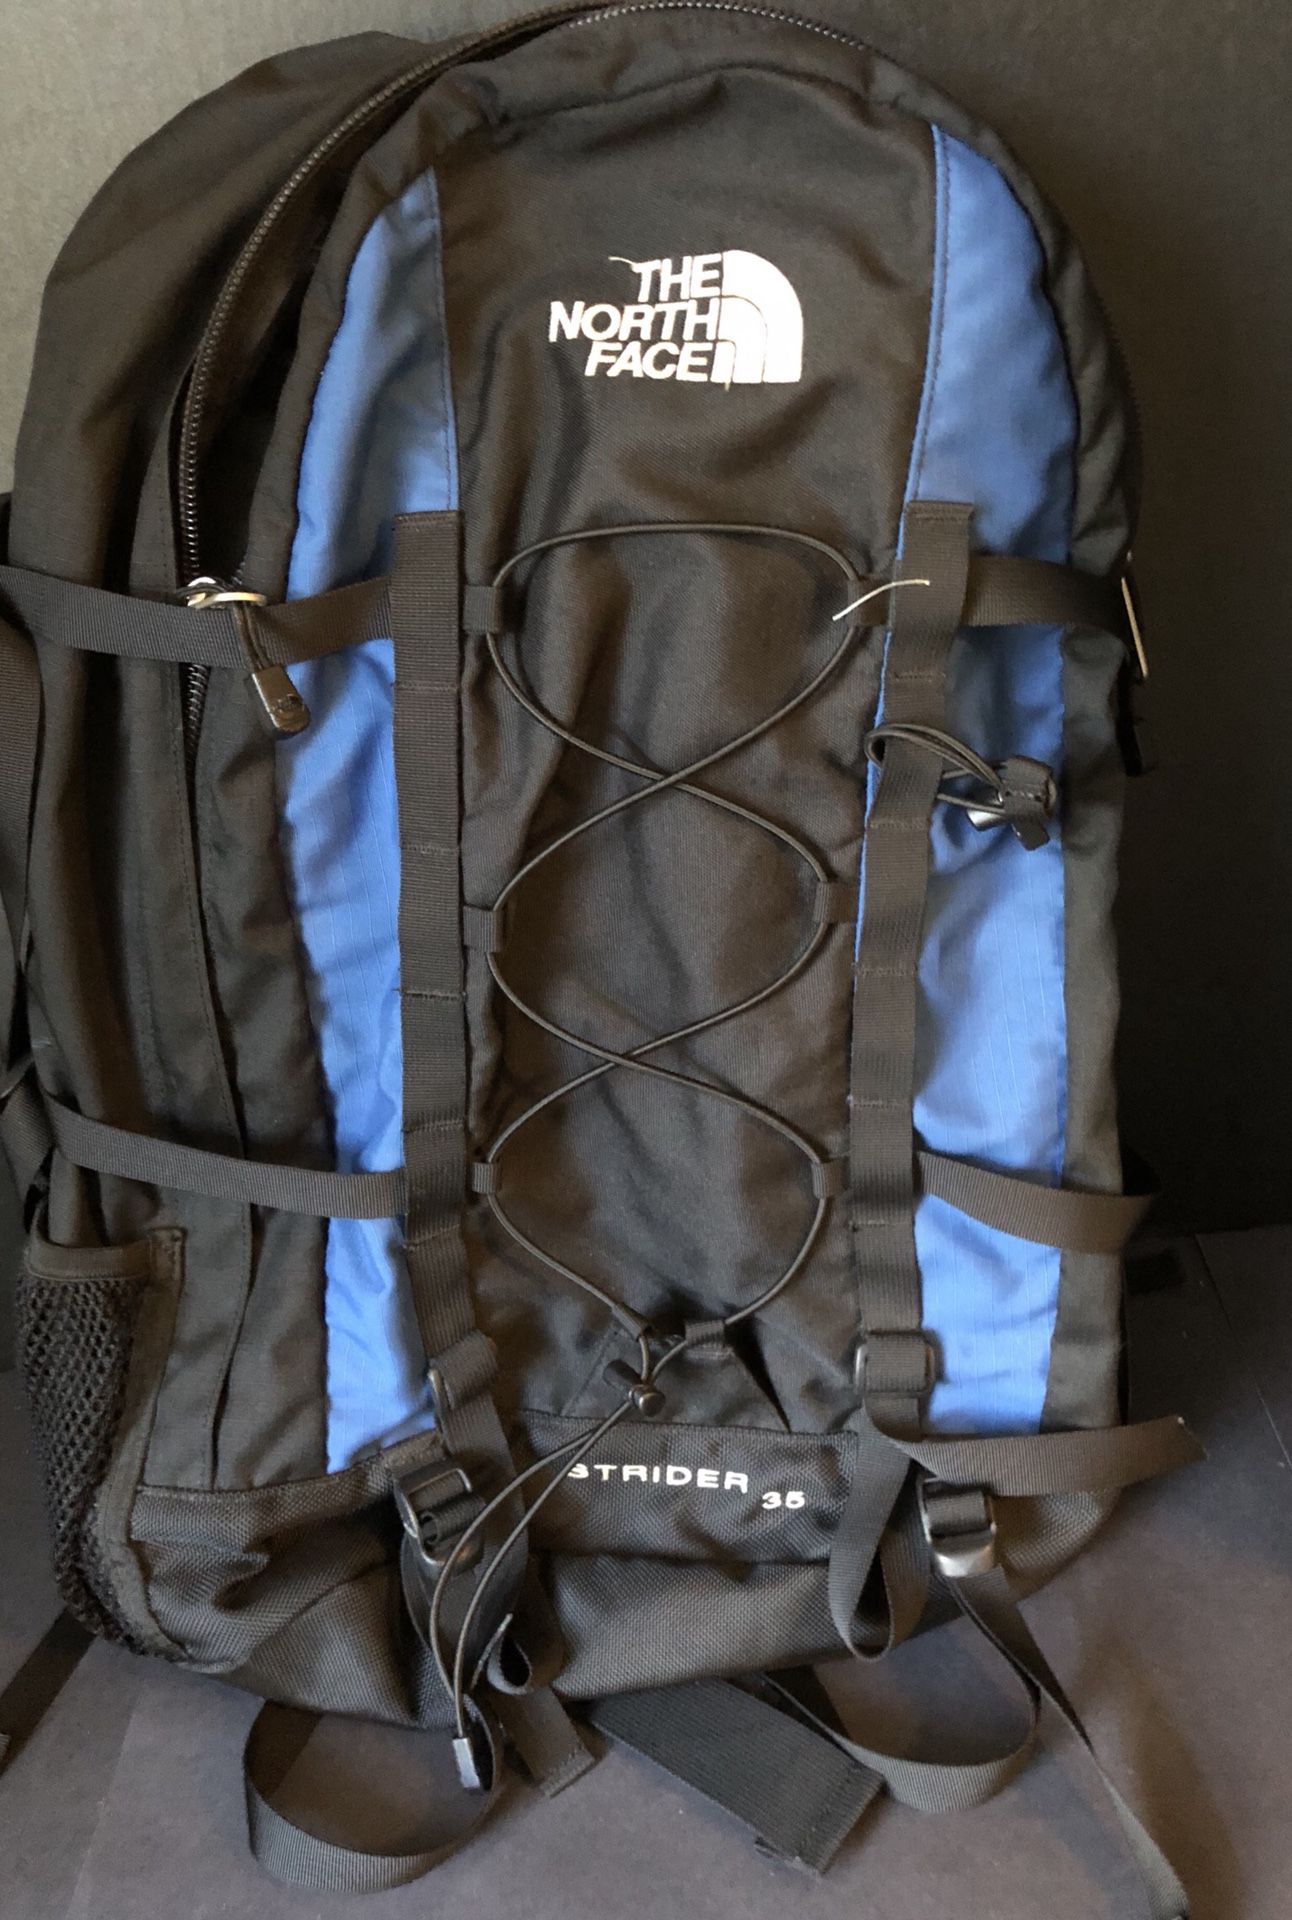 North Face 35L Strider Backpack